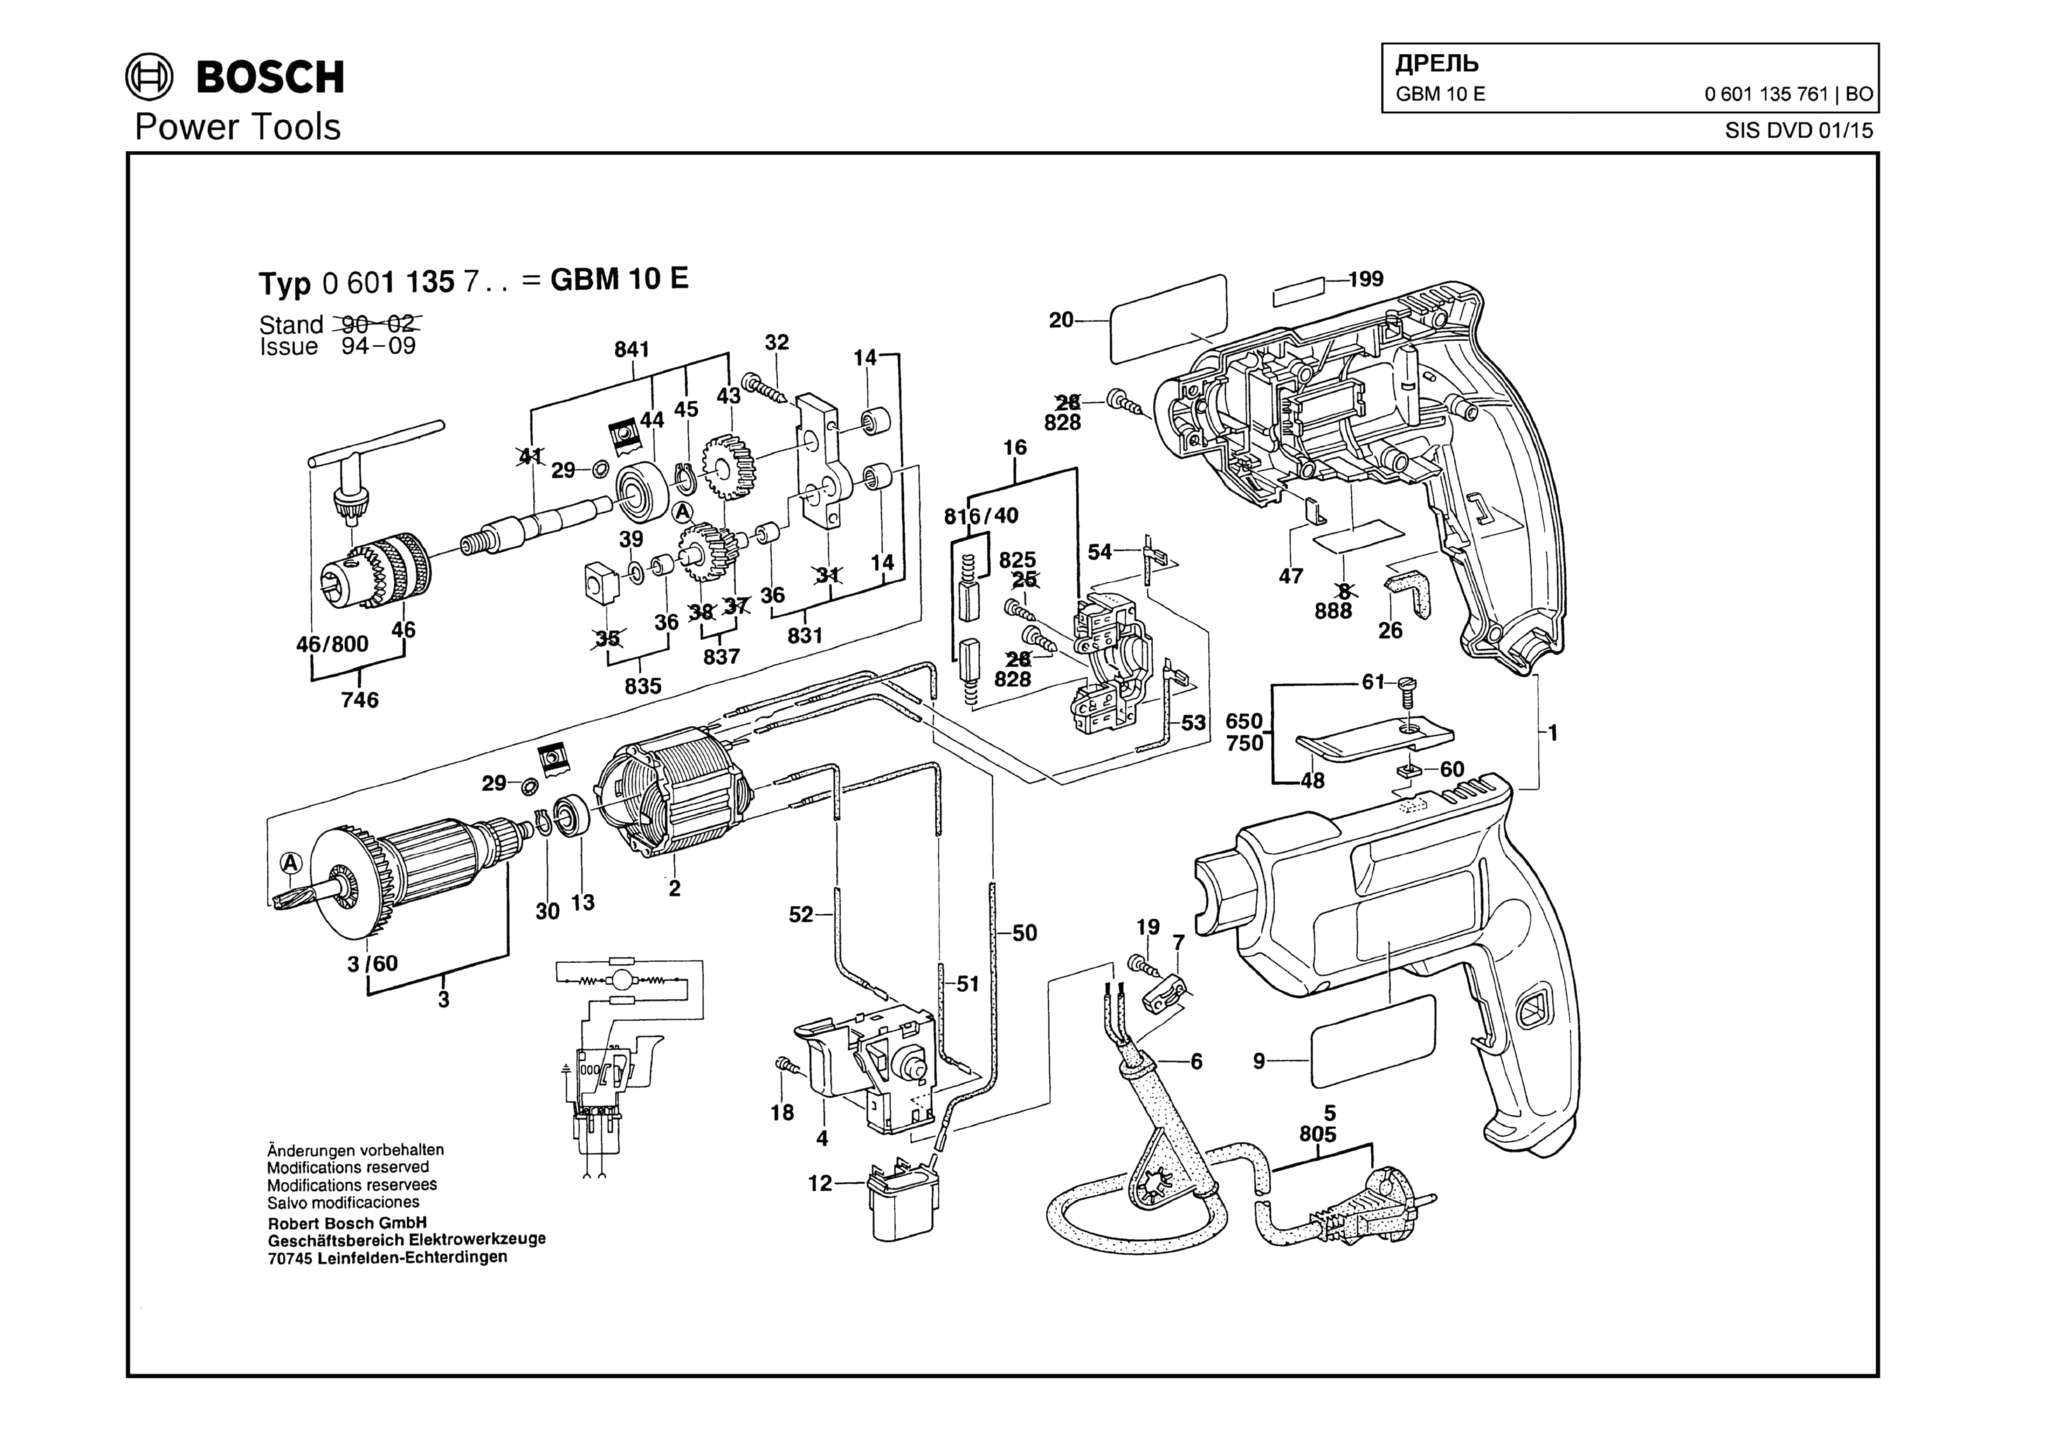 Запчасти, схема и деталировка Bosch GBM 10 E (ТИП 0601135761)